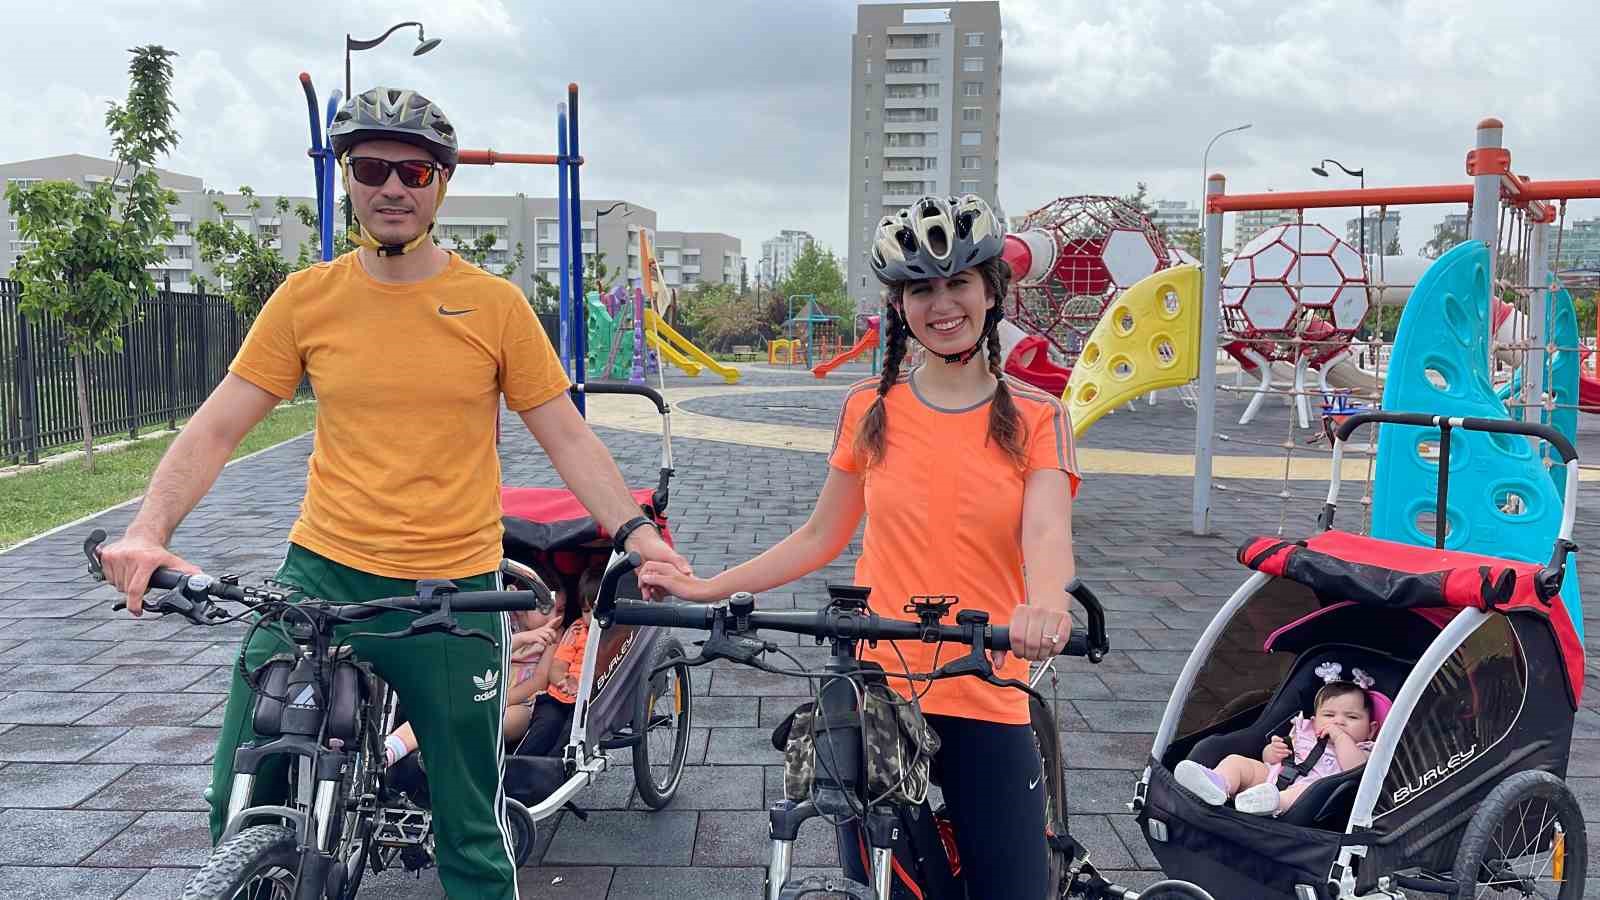 Adana’da 3 çocuklu çift her yere bisikletle gidiyor
